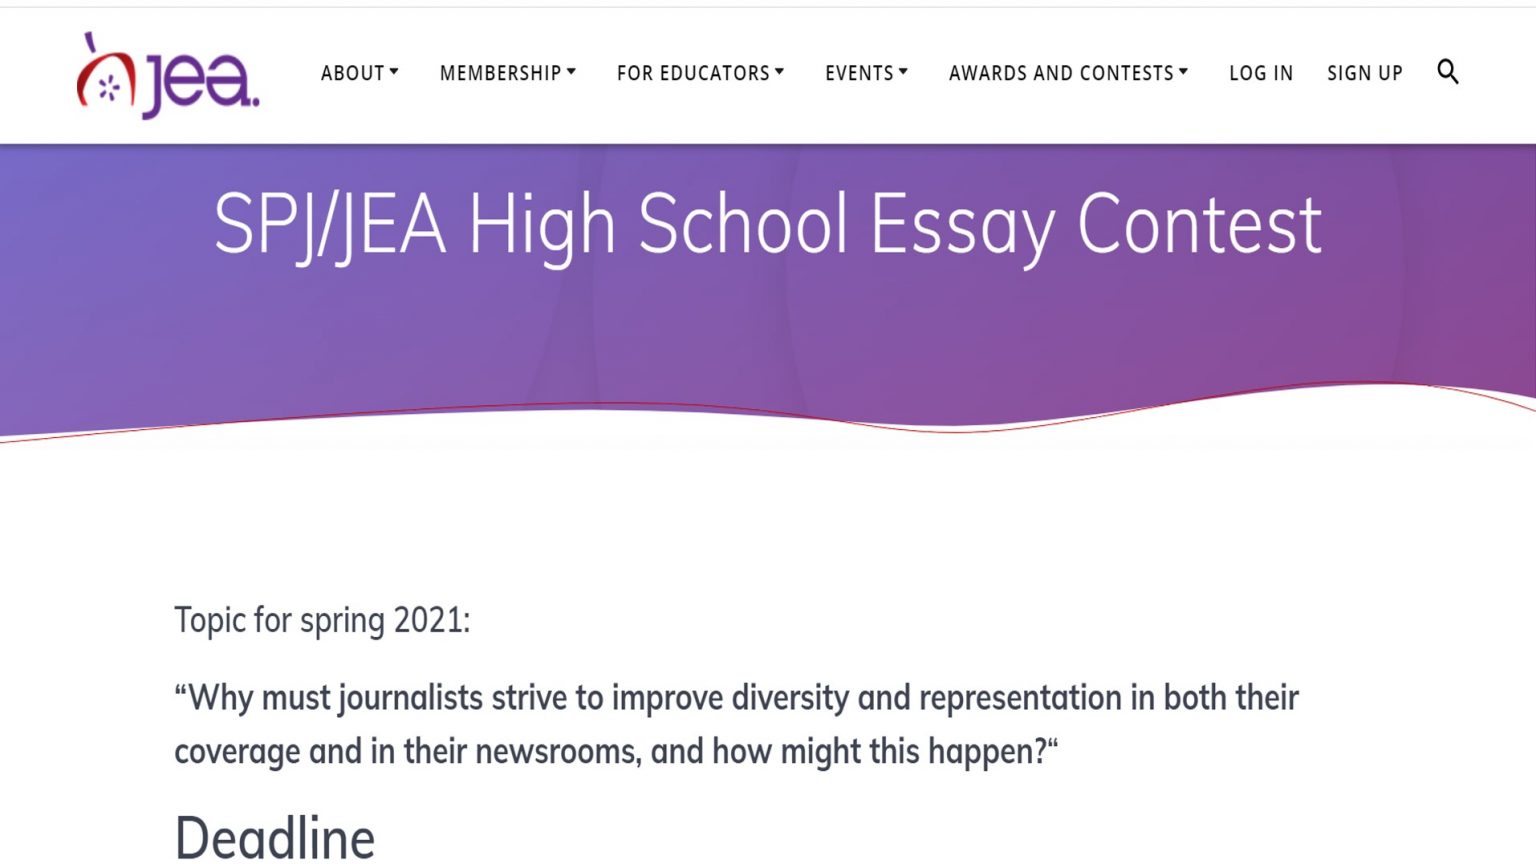 spj/jea high school essay contest